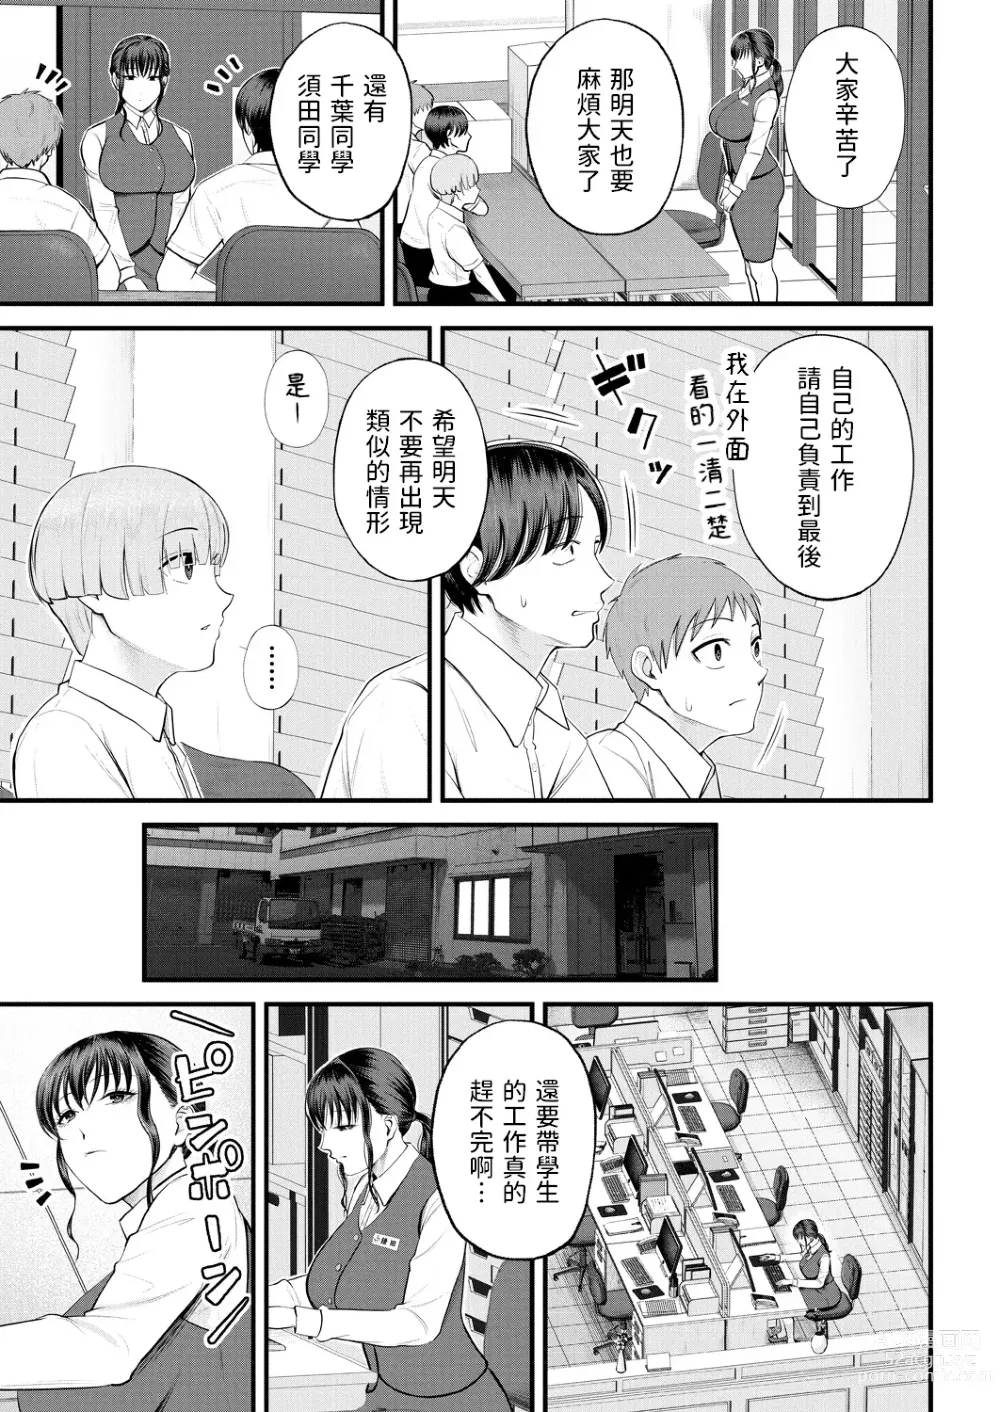 Page 7 of manga Naisho no Shokuba Taiken